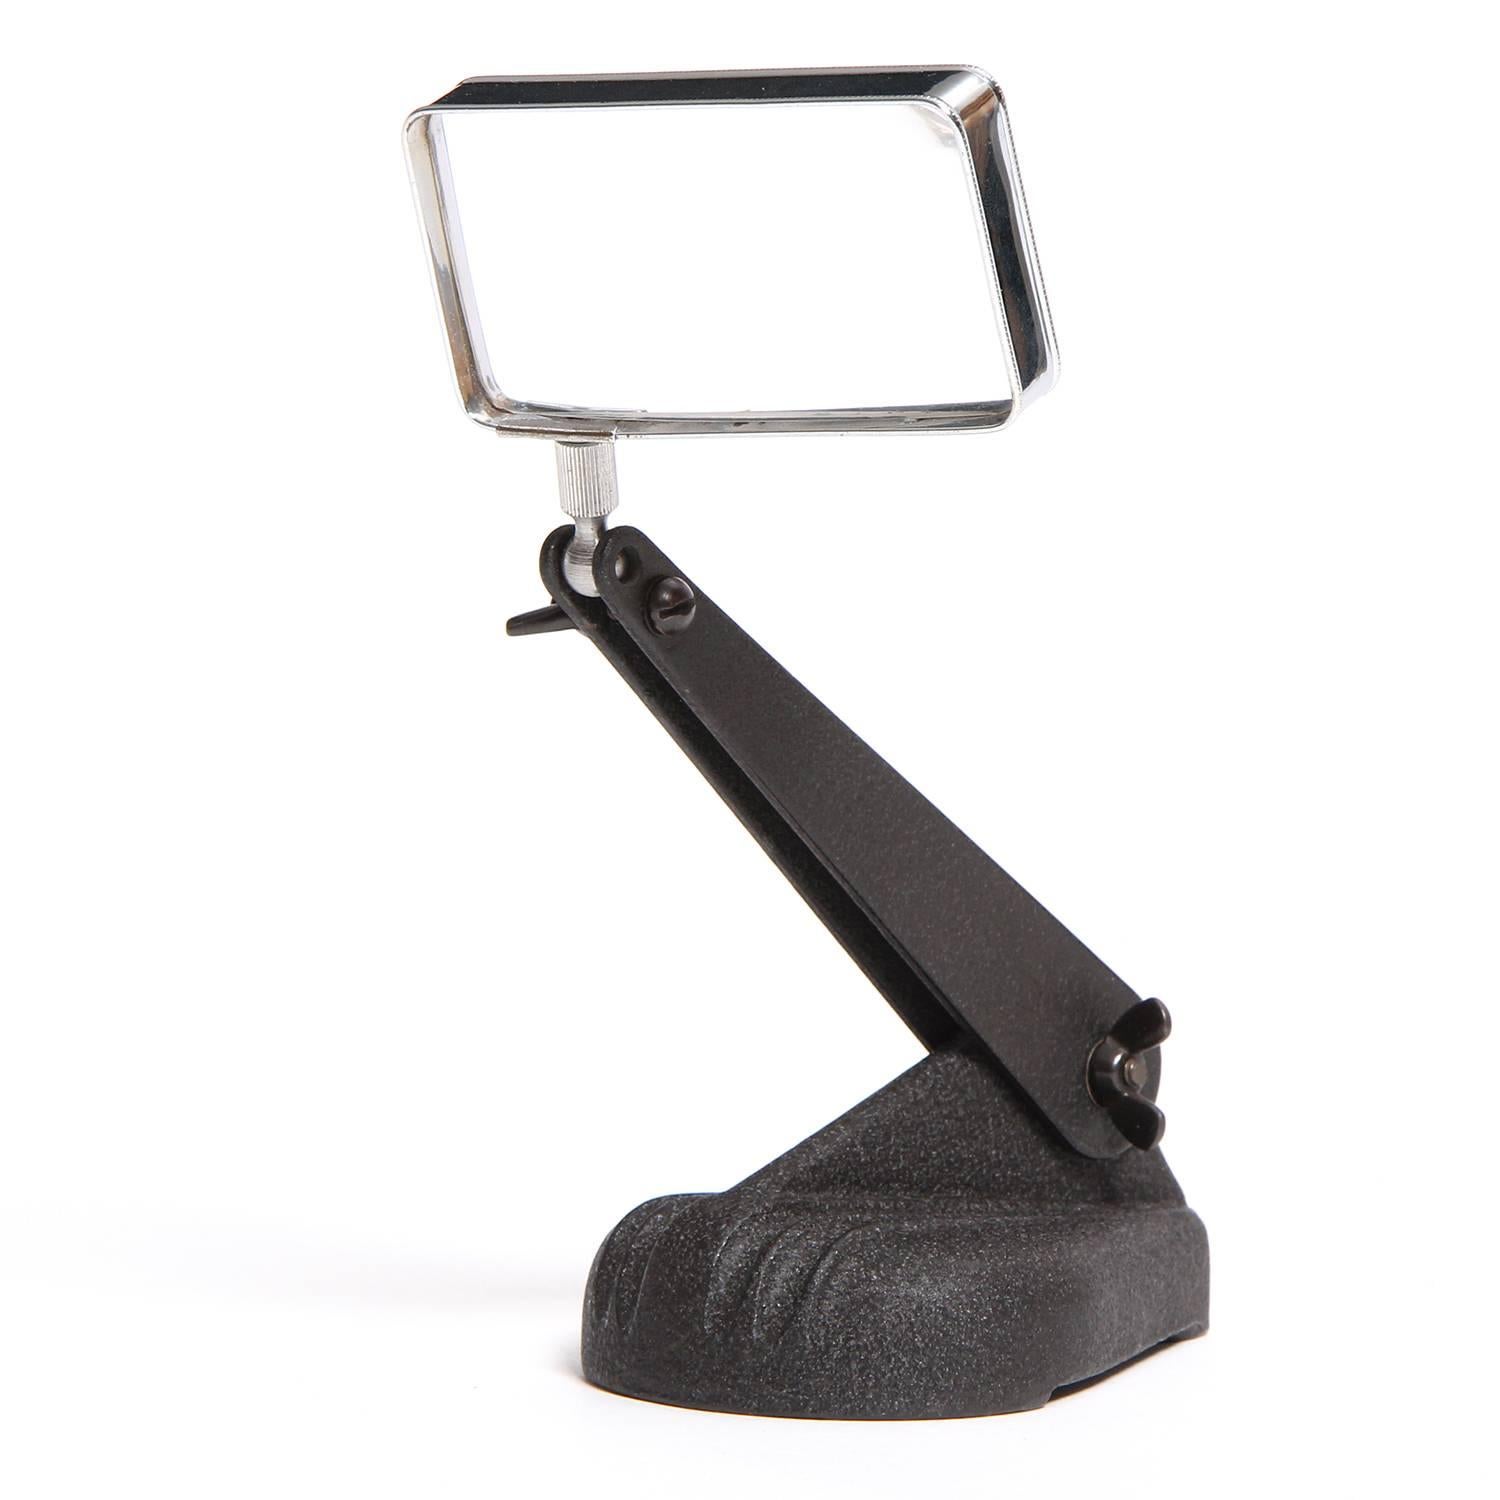 Desktop Magnifier by Bausch & Lomb